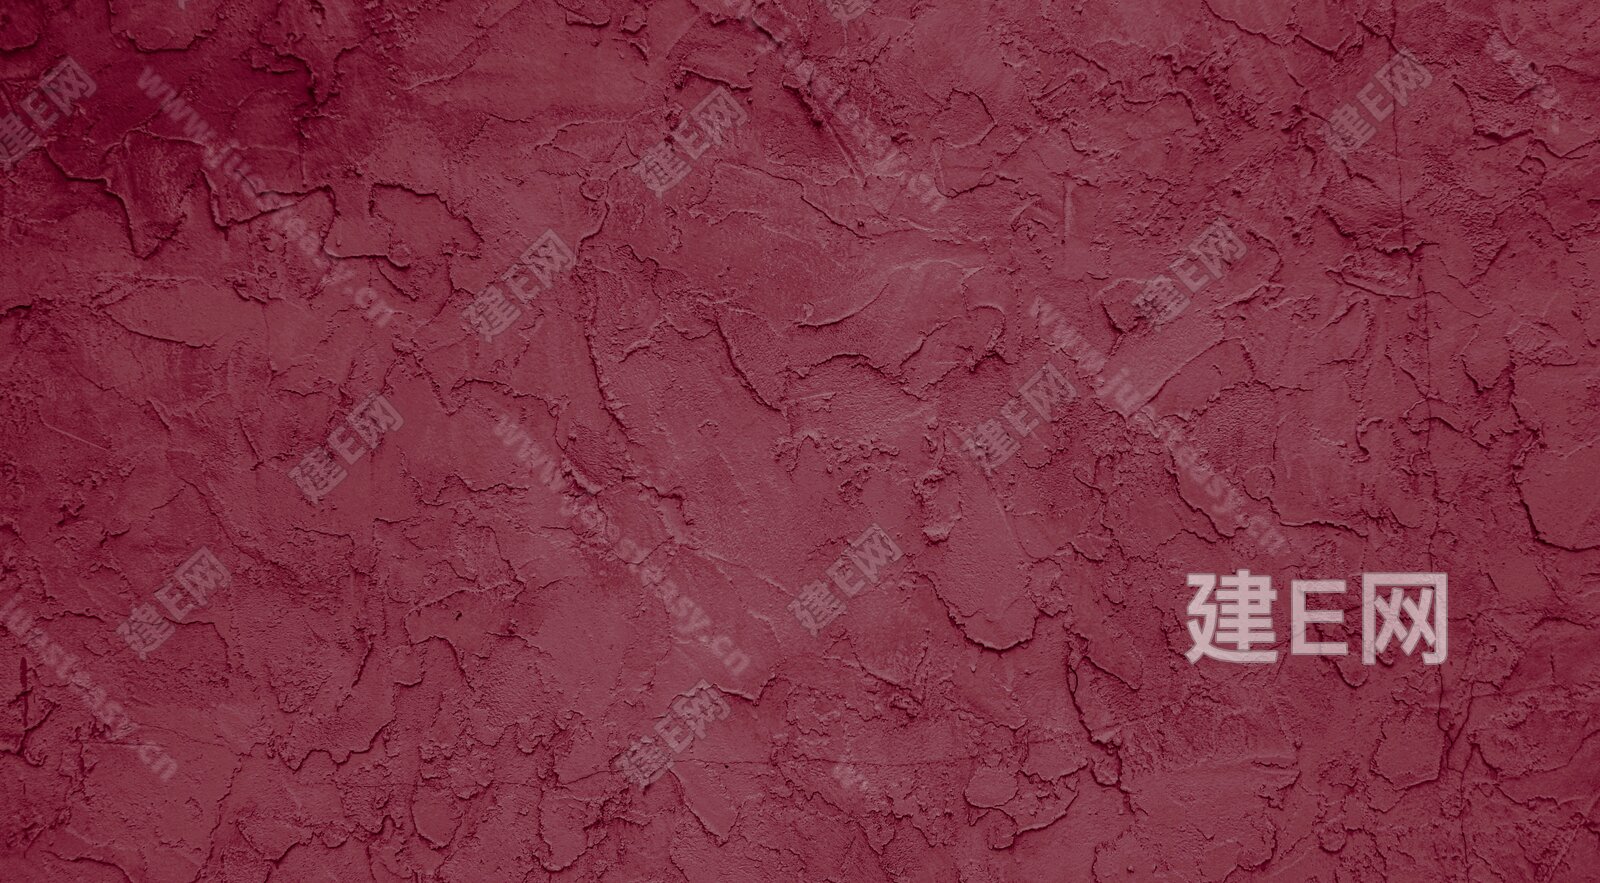 粉红色浮雕漆墙面贴图下载【ID:1111702618】_【知末网贴图库】